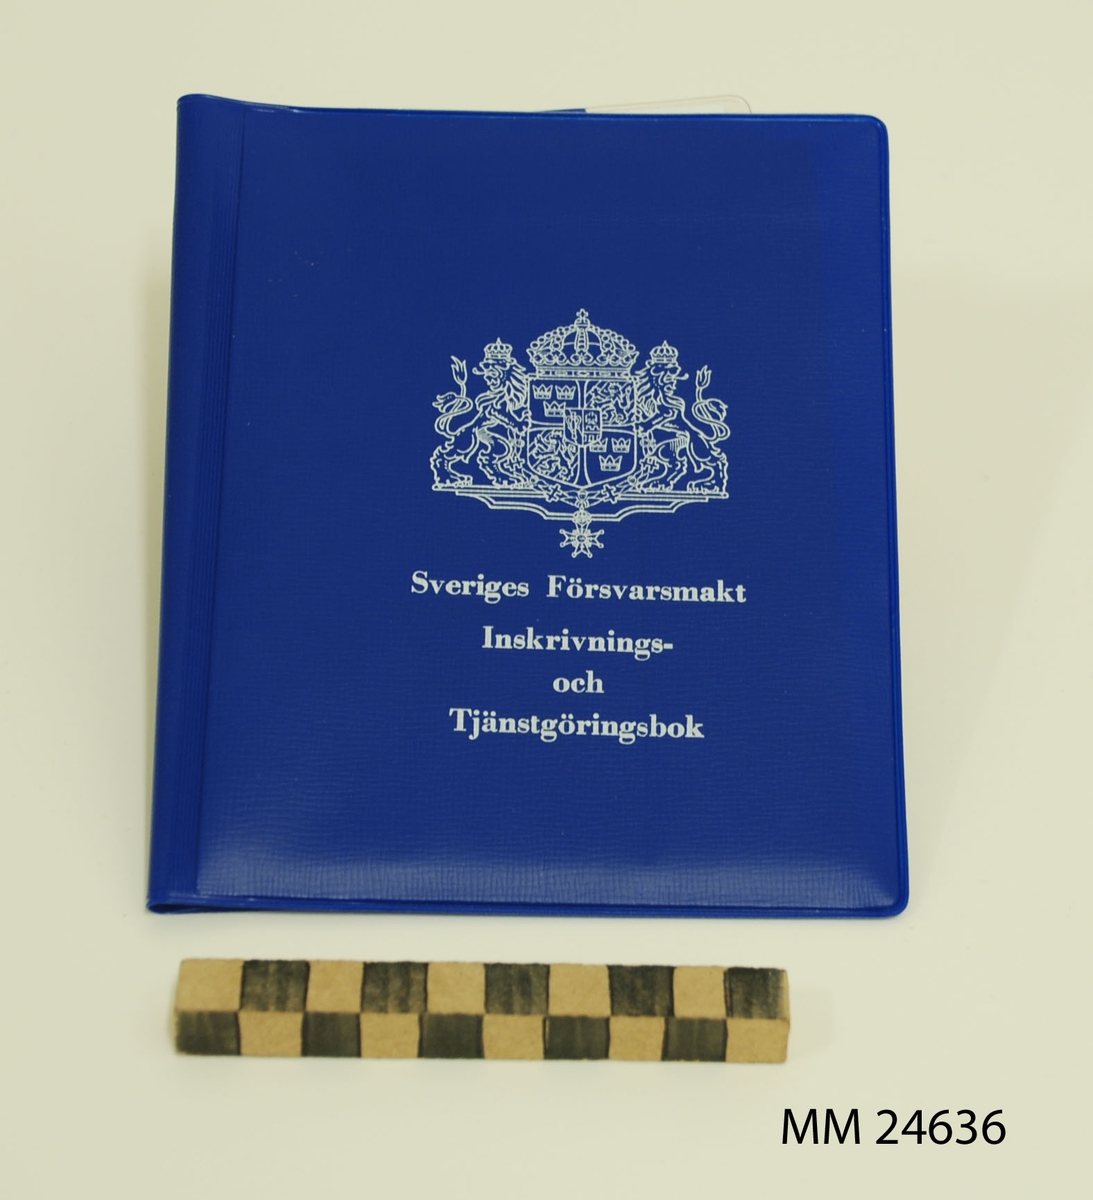 Inskrivnings- och tjänstgöringsbok. Fodral av blå plast med vit tryckt text: "Sveriges Försvarsmakt Inskrivnings- och Tjänstgöringsbok" samt stora riksvapnet.  På baksidan tryckt text i vitt: "M7102-383430-9. Utgåva 3. (VPV). 75-05. 50 000 ex. LF-ALLF 405 75 231". Plastfickor på fodralets insida. På ena sidan finns terminslönekort. På andra sidan finns tjänstgöringskort, krigsplaceringsorder, en folder kallad "Minneslista" samt en identitetsbricka av plåt. Foldern "Minneslista" innehåller ett sammandrag av de viktigaste bestämmelserna som värnpliktiga behöver känna till. Foldern giltig efter 1971.